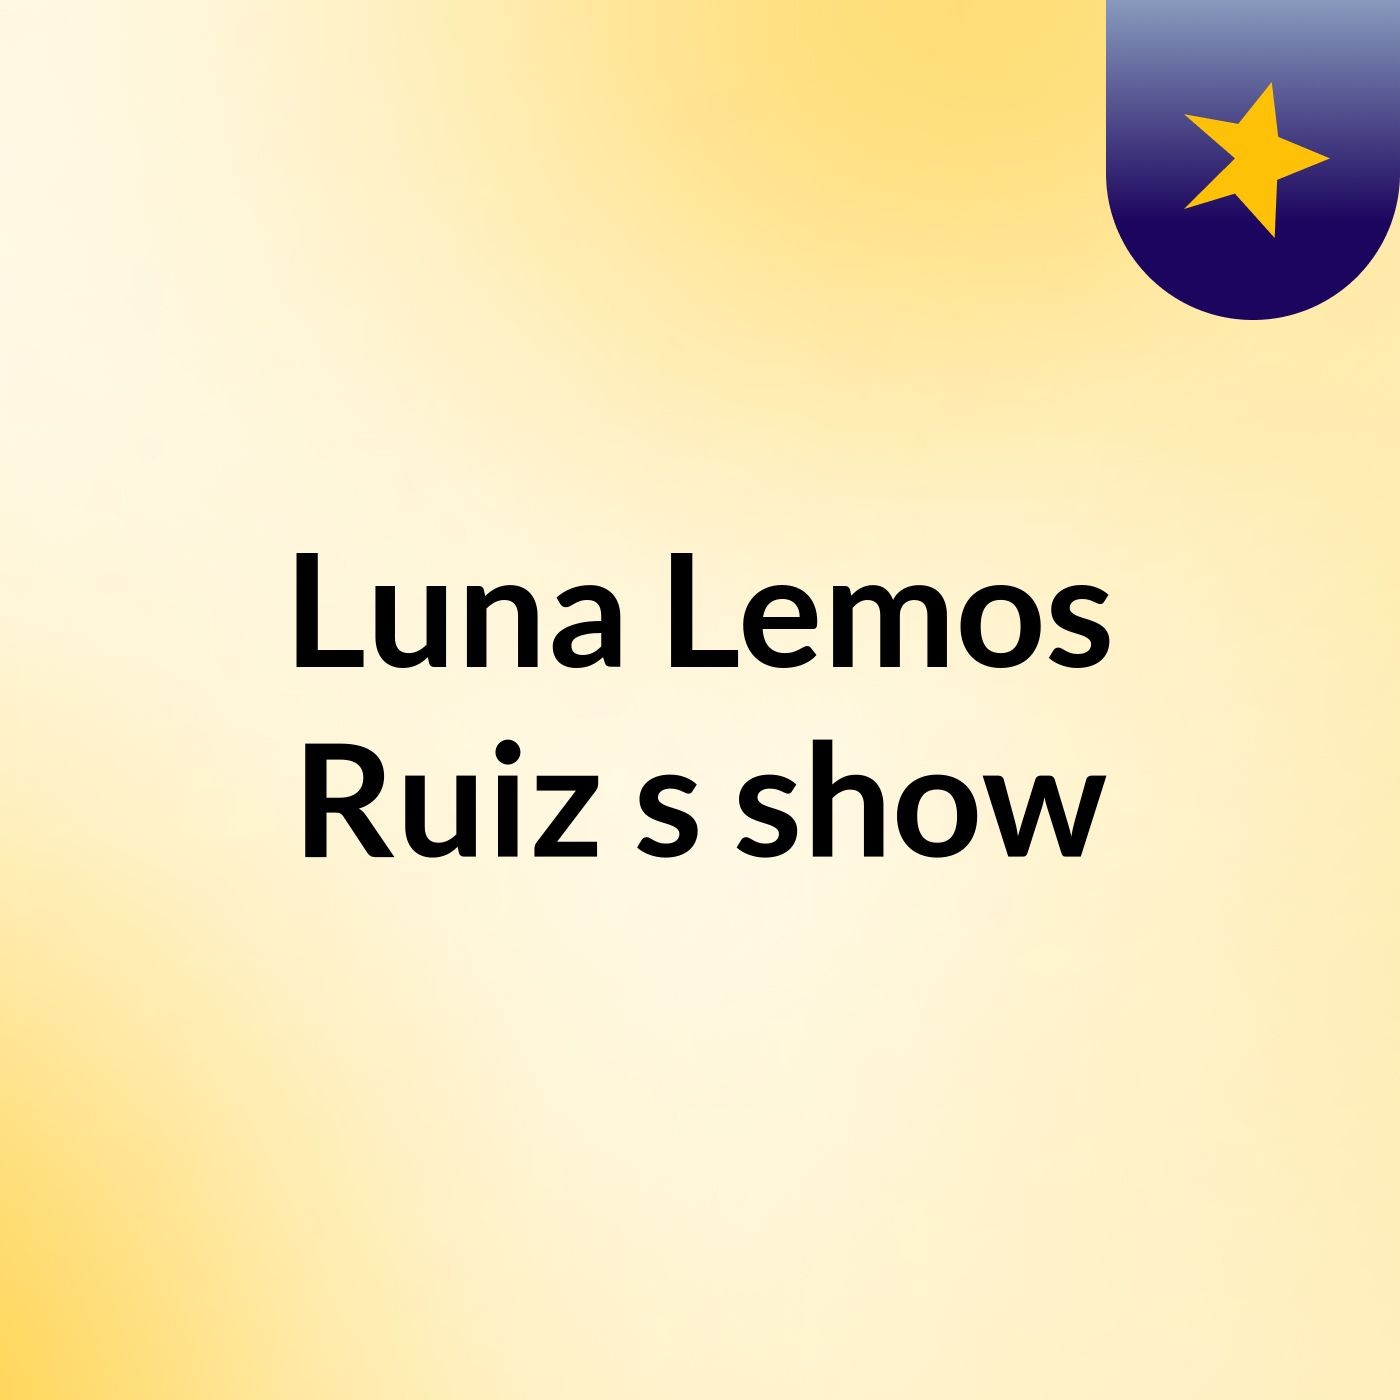 Luna Lemos Ruiz's show